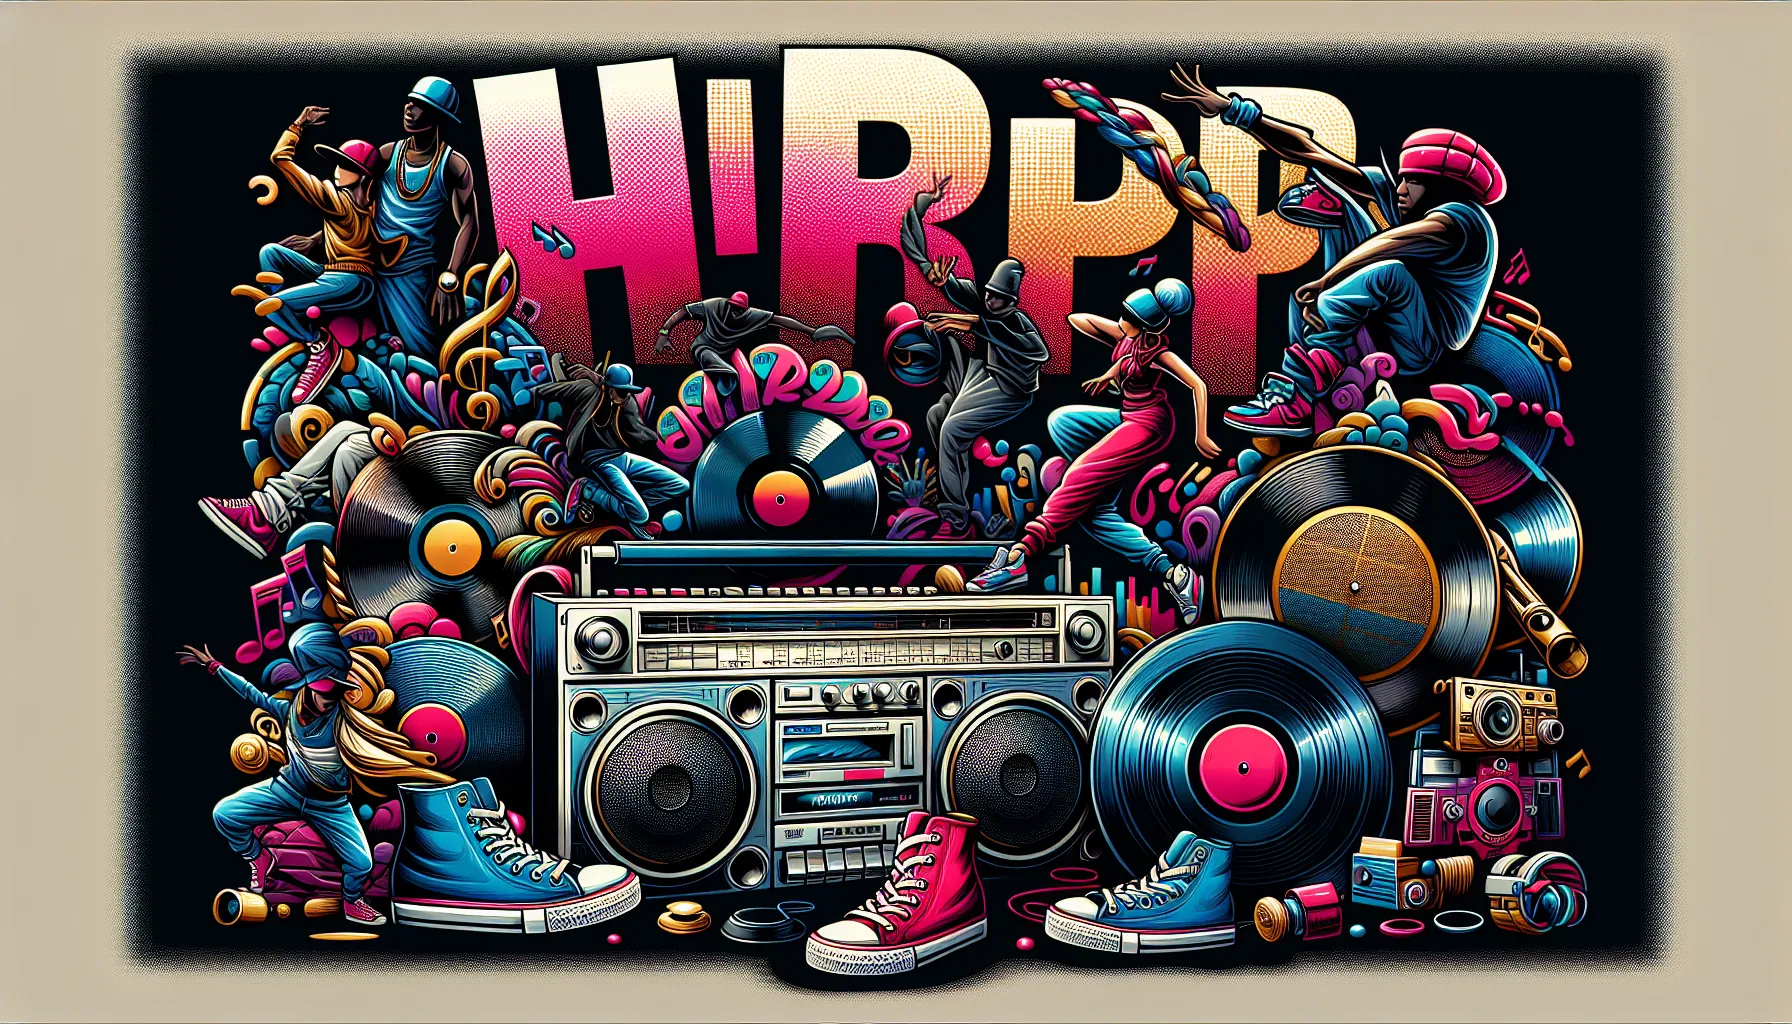 O Hip Hop é um movimento cultural que se originou nas comunidades negras e latinas nos Estados Unidos, principalmente nas décadas de 1970 e 1980. Suas raízes históricas estão profundamente ligadas às experiências e lutas dessas comunidades.

A cultura do Hip Hop surgiu como uma forma de expressão artística e política, que abrange quatro elementos principais: o rap (música falada), o DJ